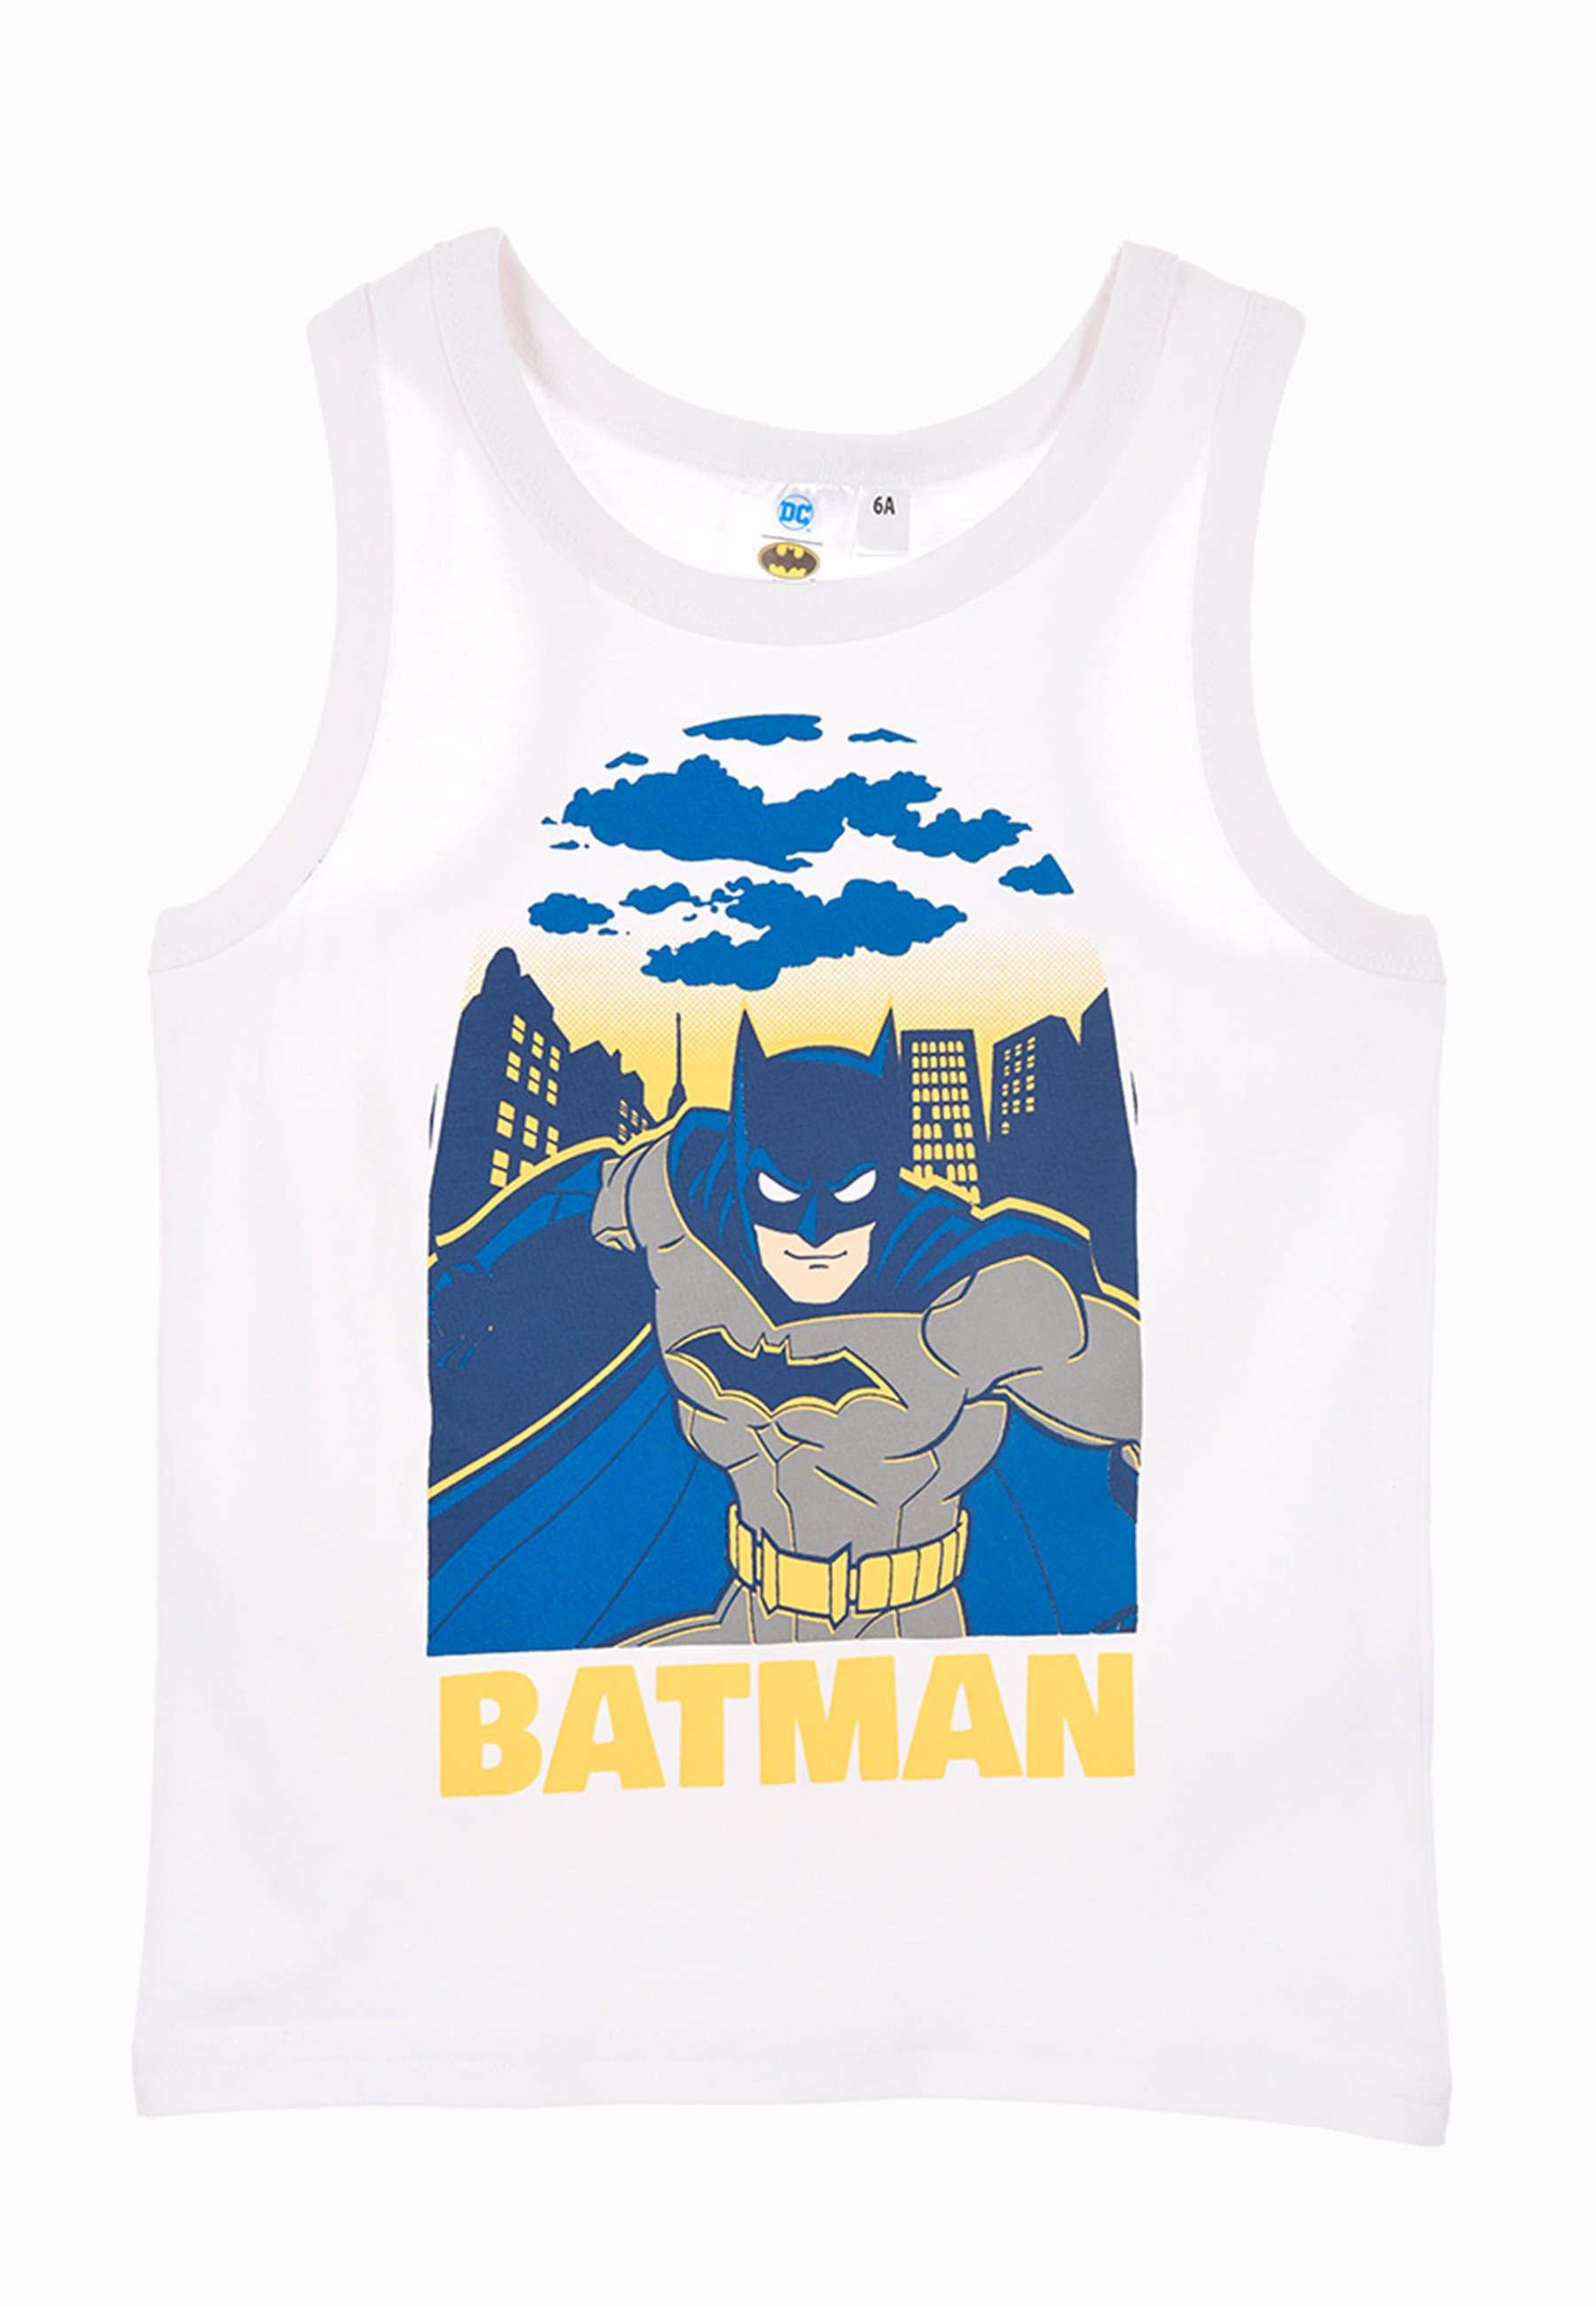 Batman Muskelshirt Jungen Tank-Top Sommer-Shirt Muskel-Shirt